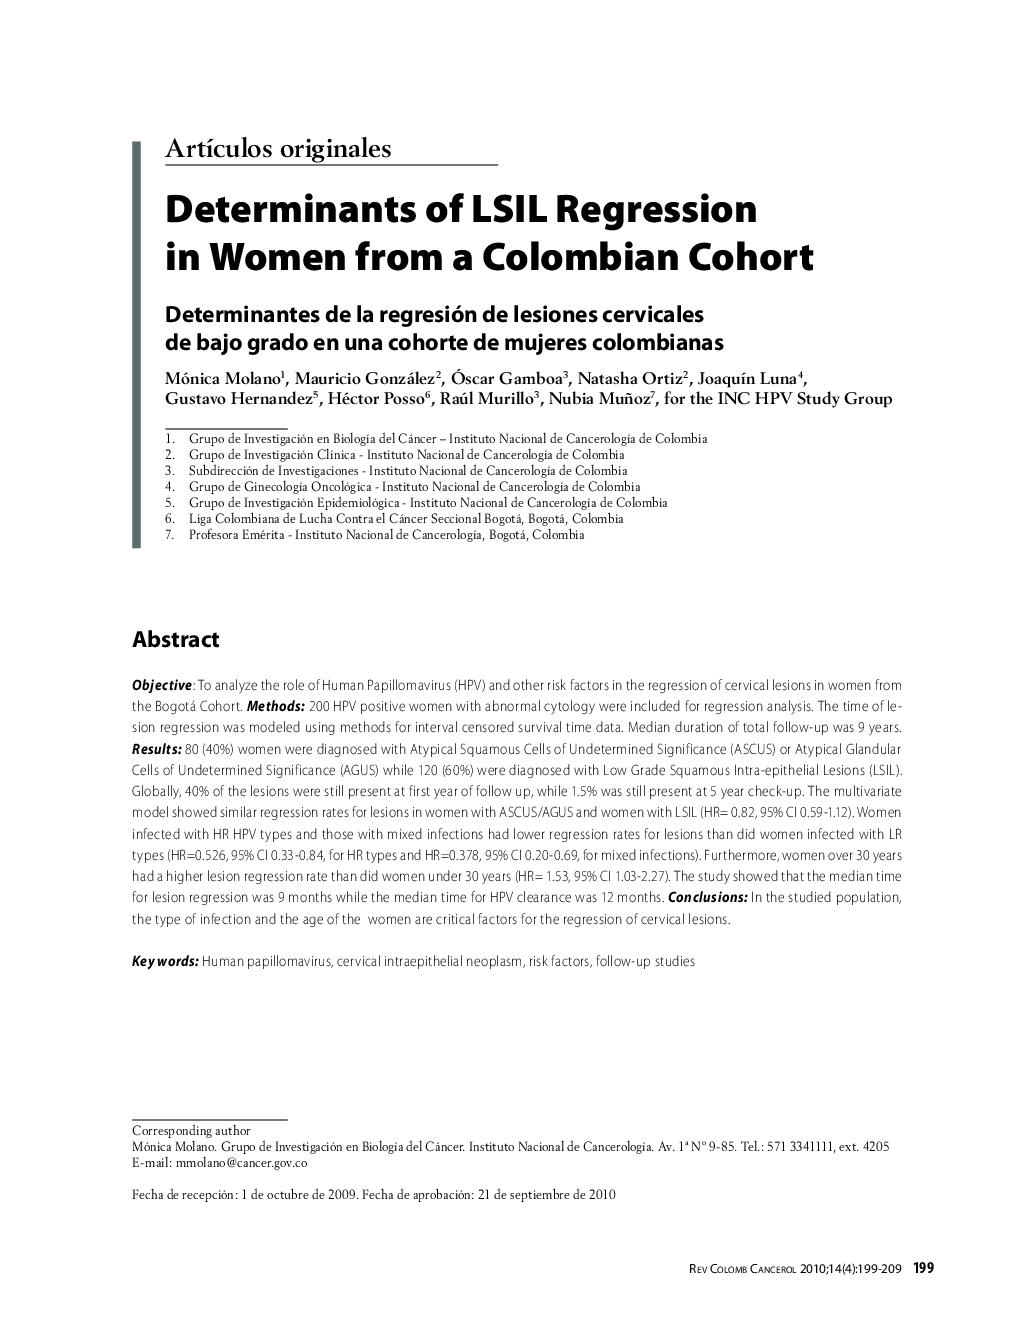 Determinants of LSIL Regression in Women from a Colombian CohortDeterminantes de la regresión de lesiones cervicales de bajo grado en una cohorte de mujeres colombianas